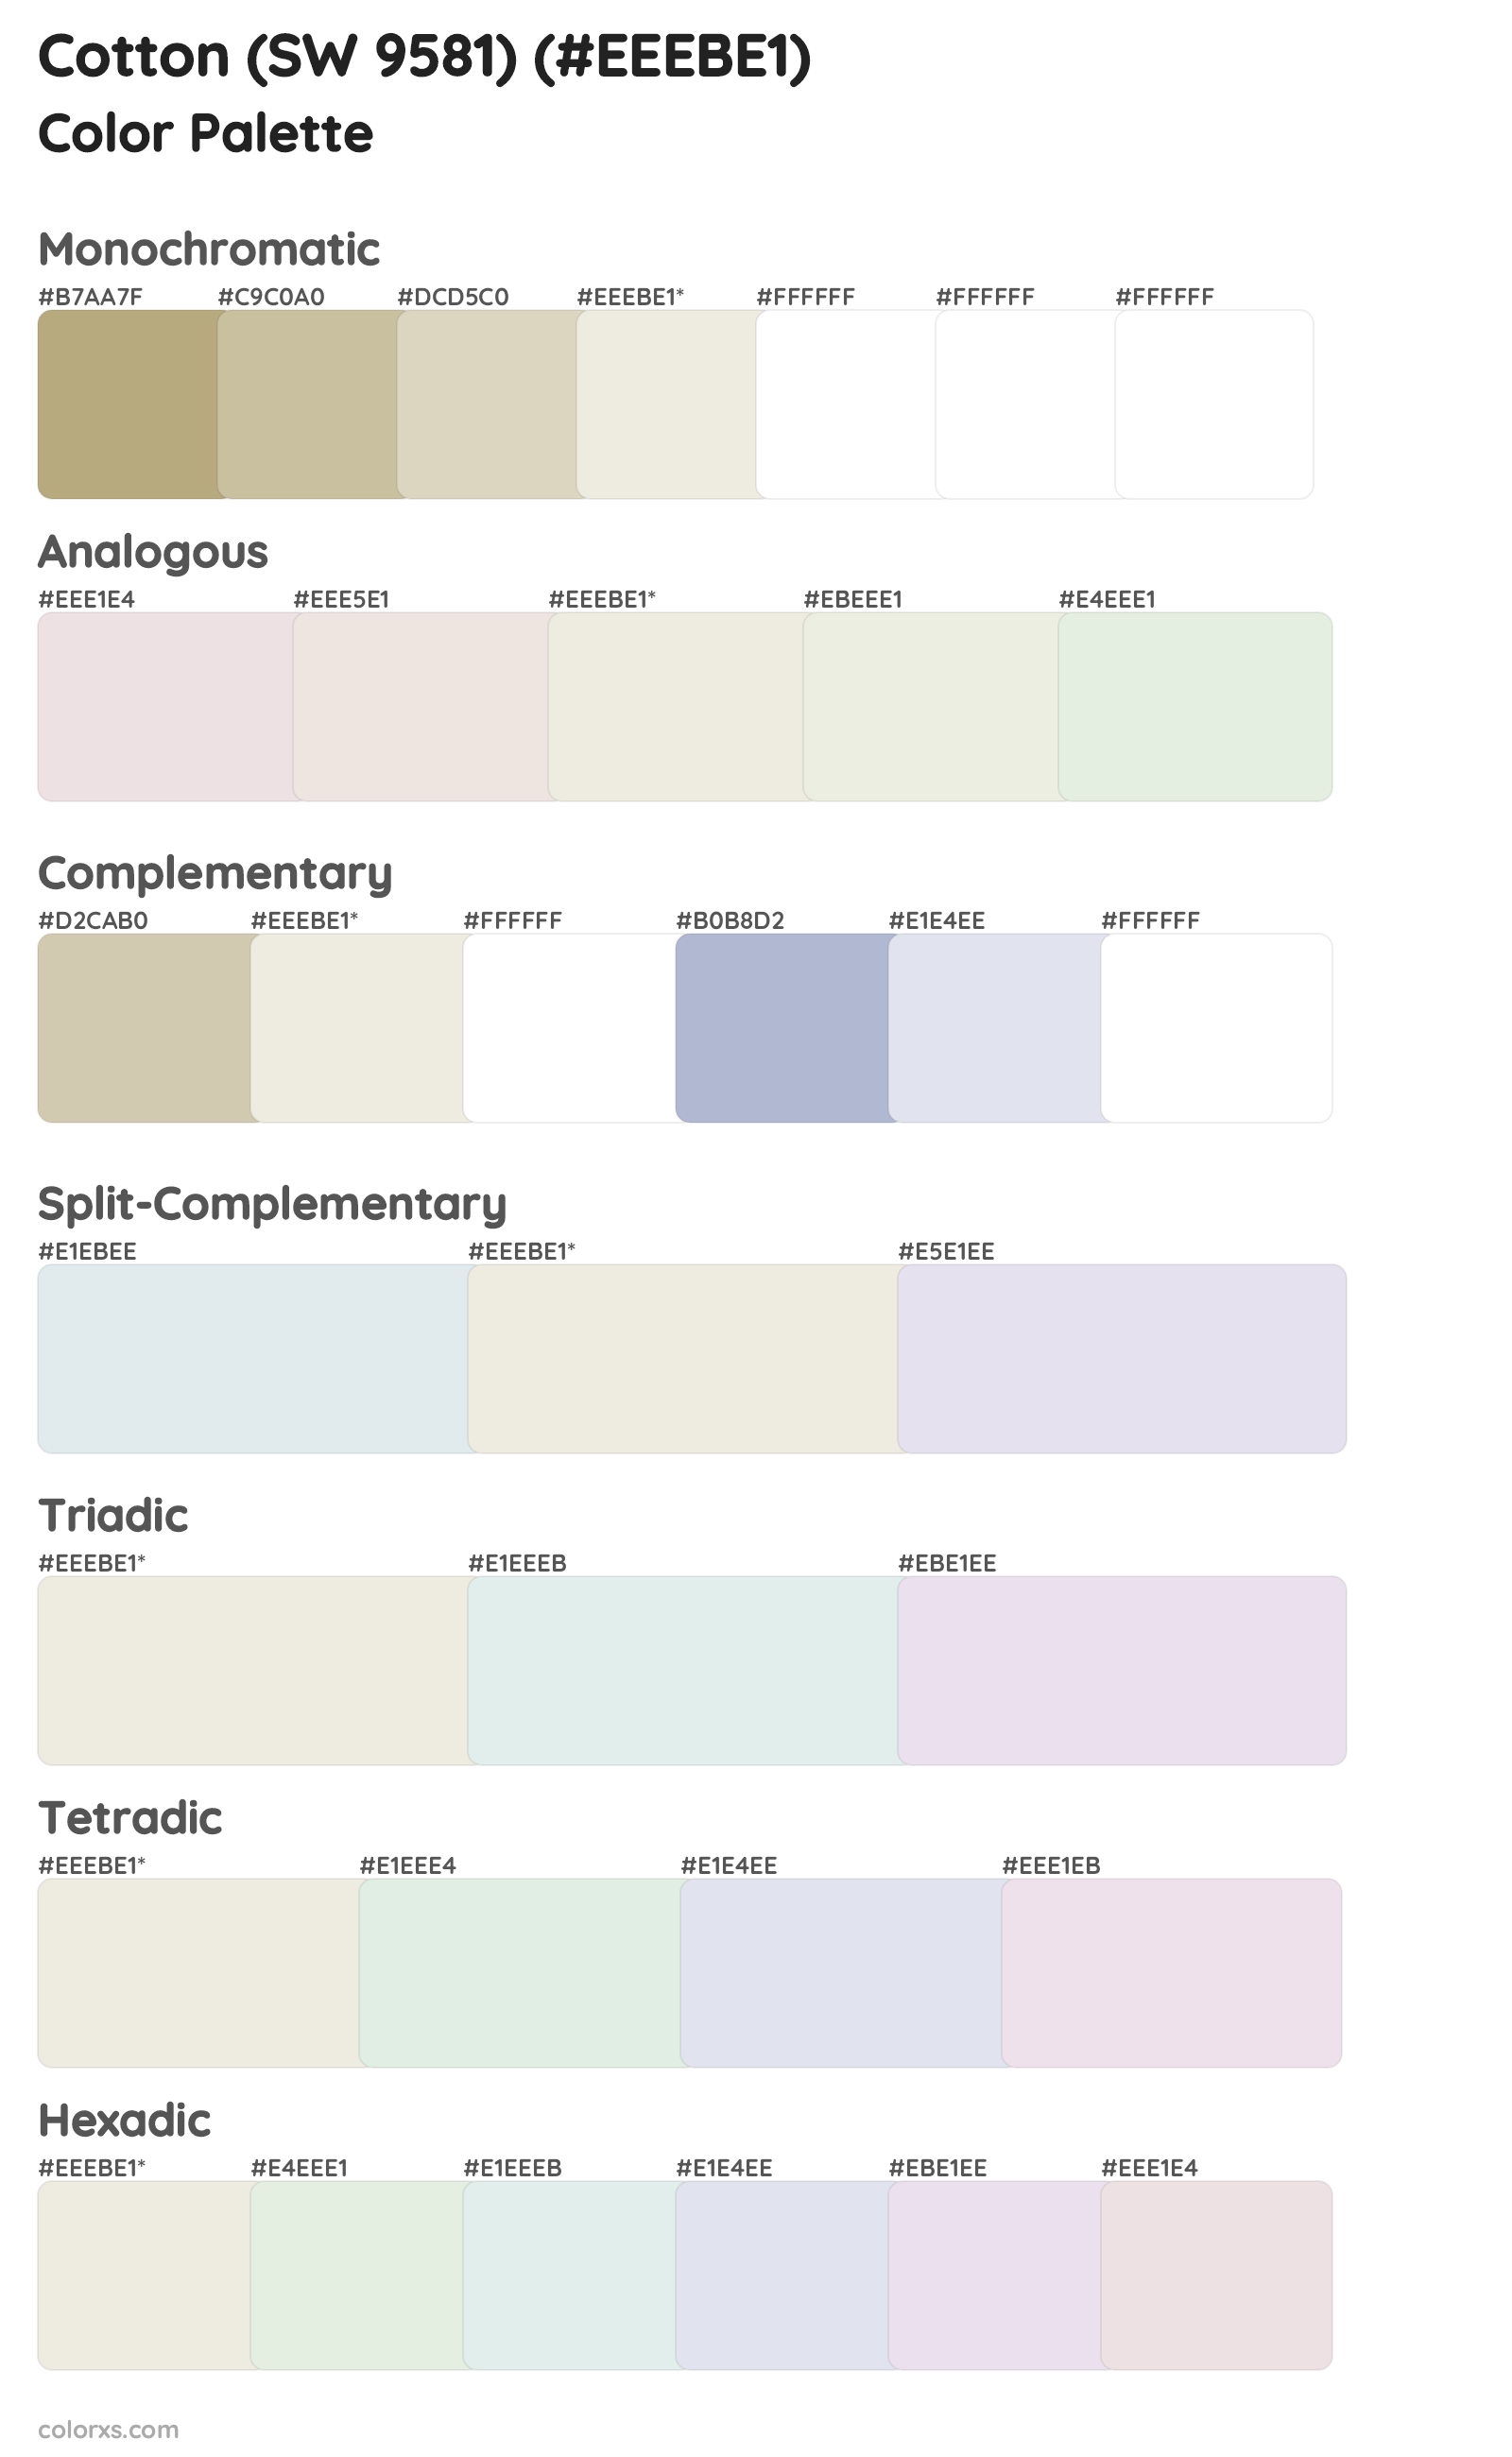 Cotton (SW 9581) Color Scheme Palettes